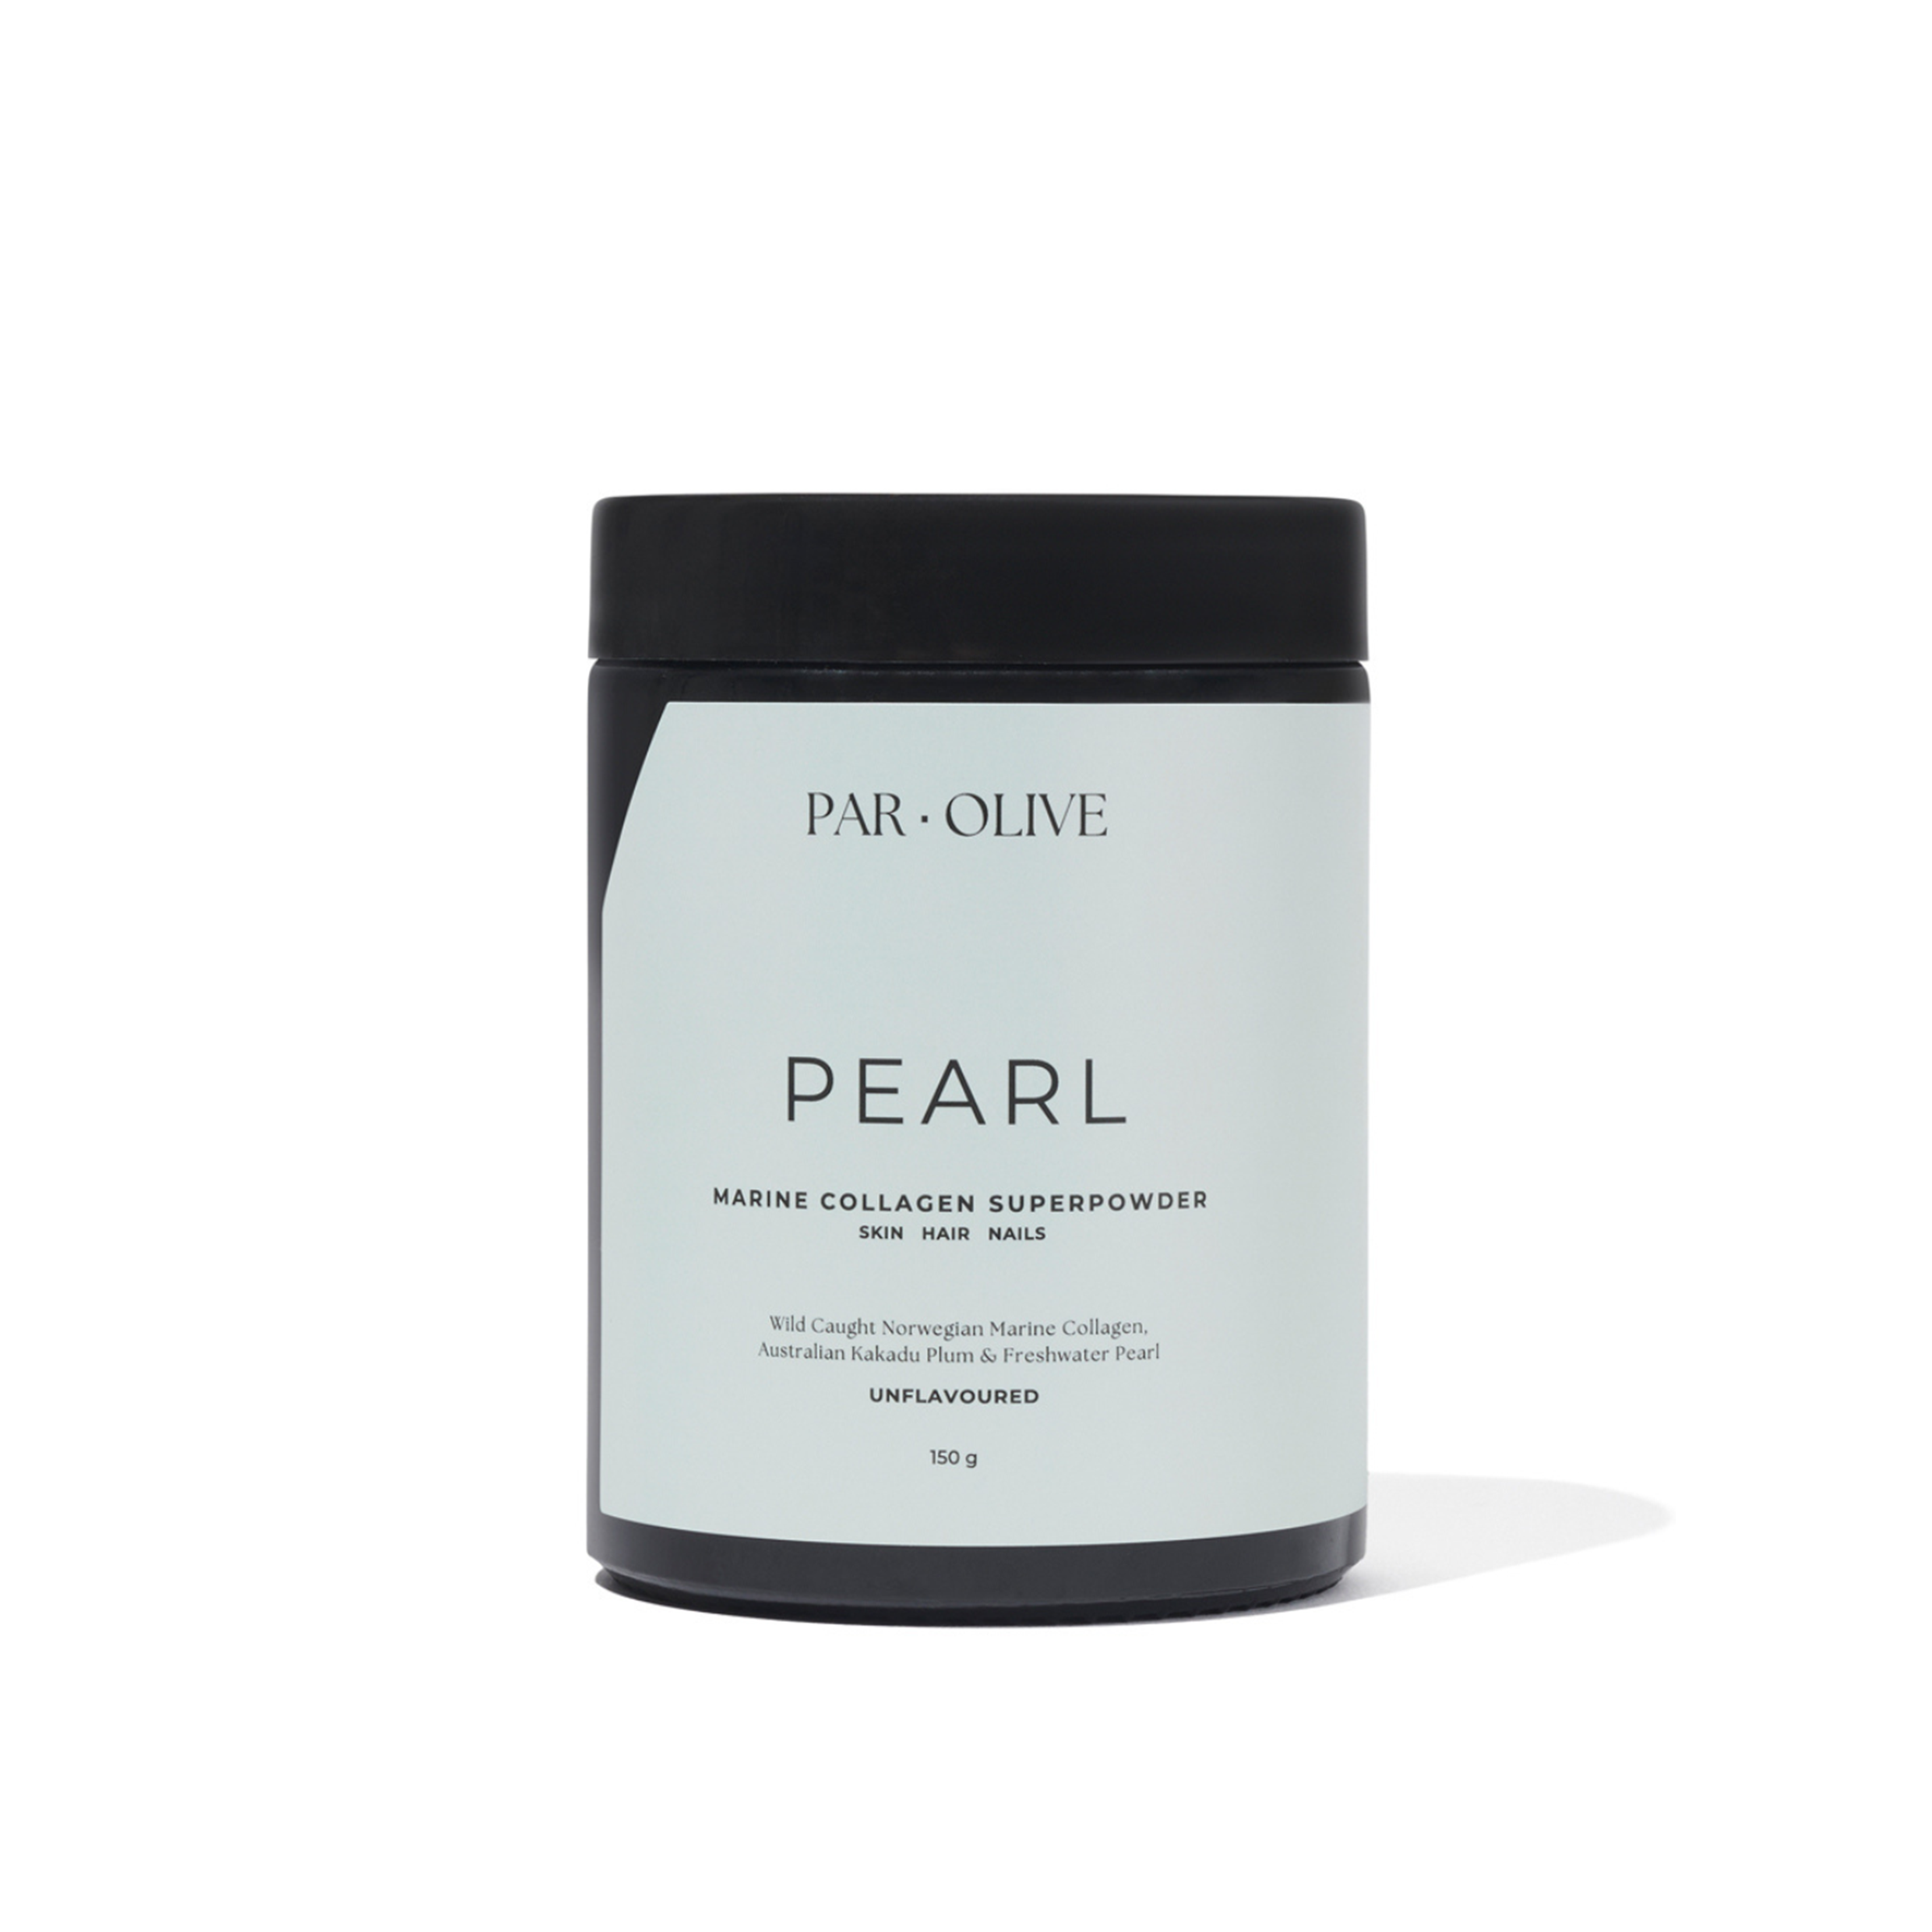 Par Olive PEARL Marine Collagen Superpowder (Unflavoured)